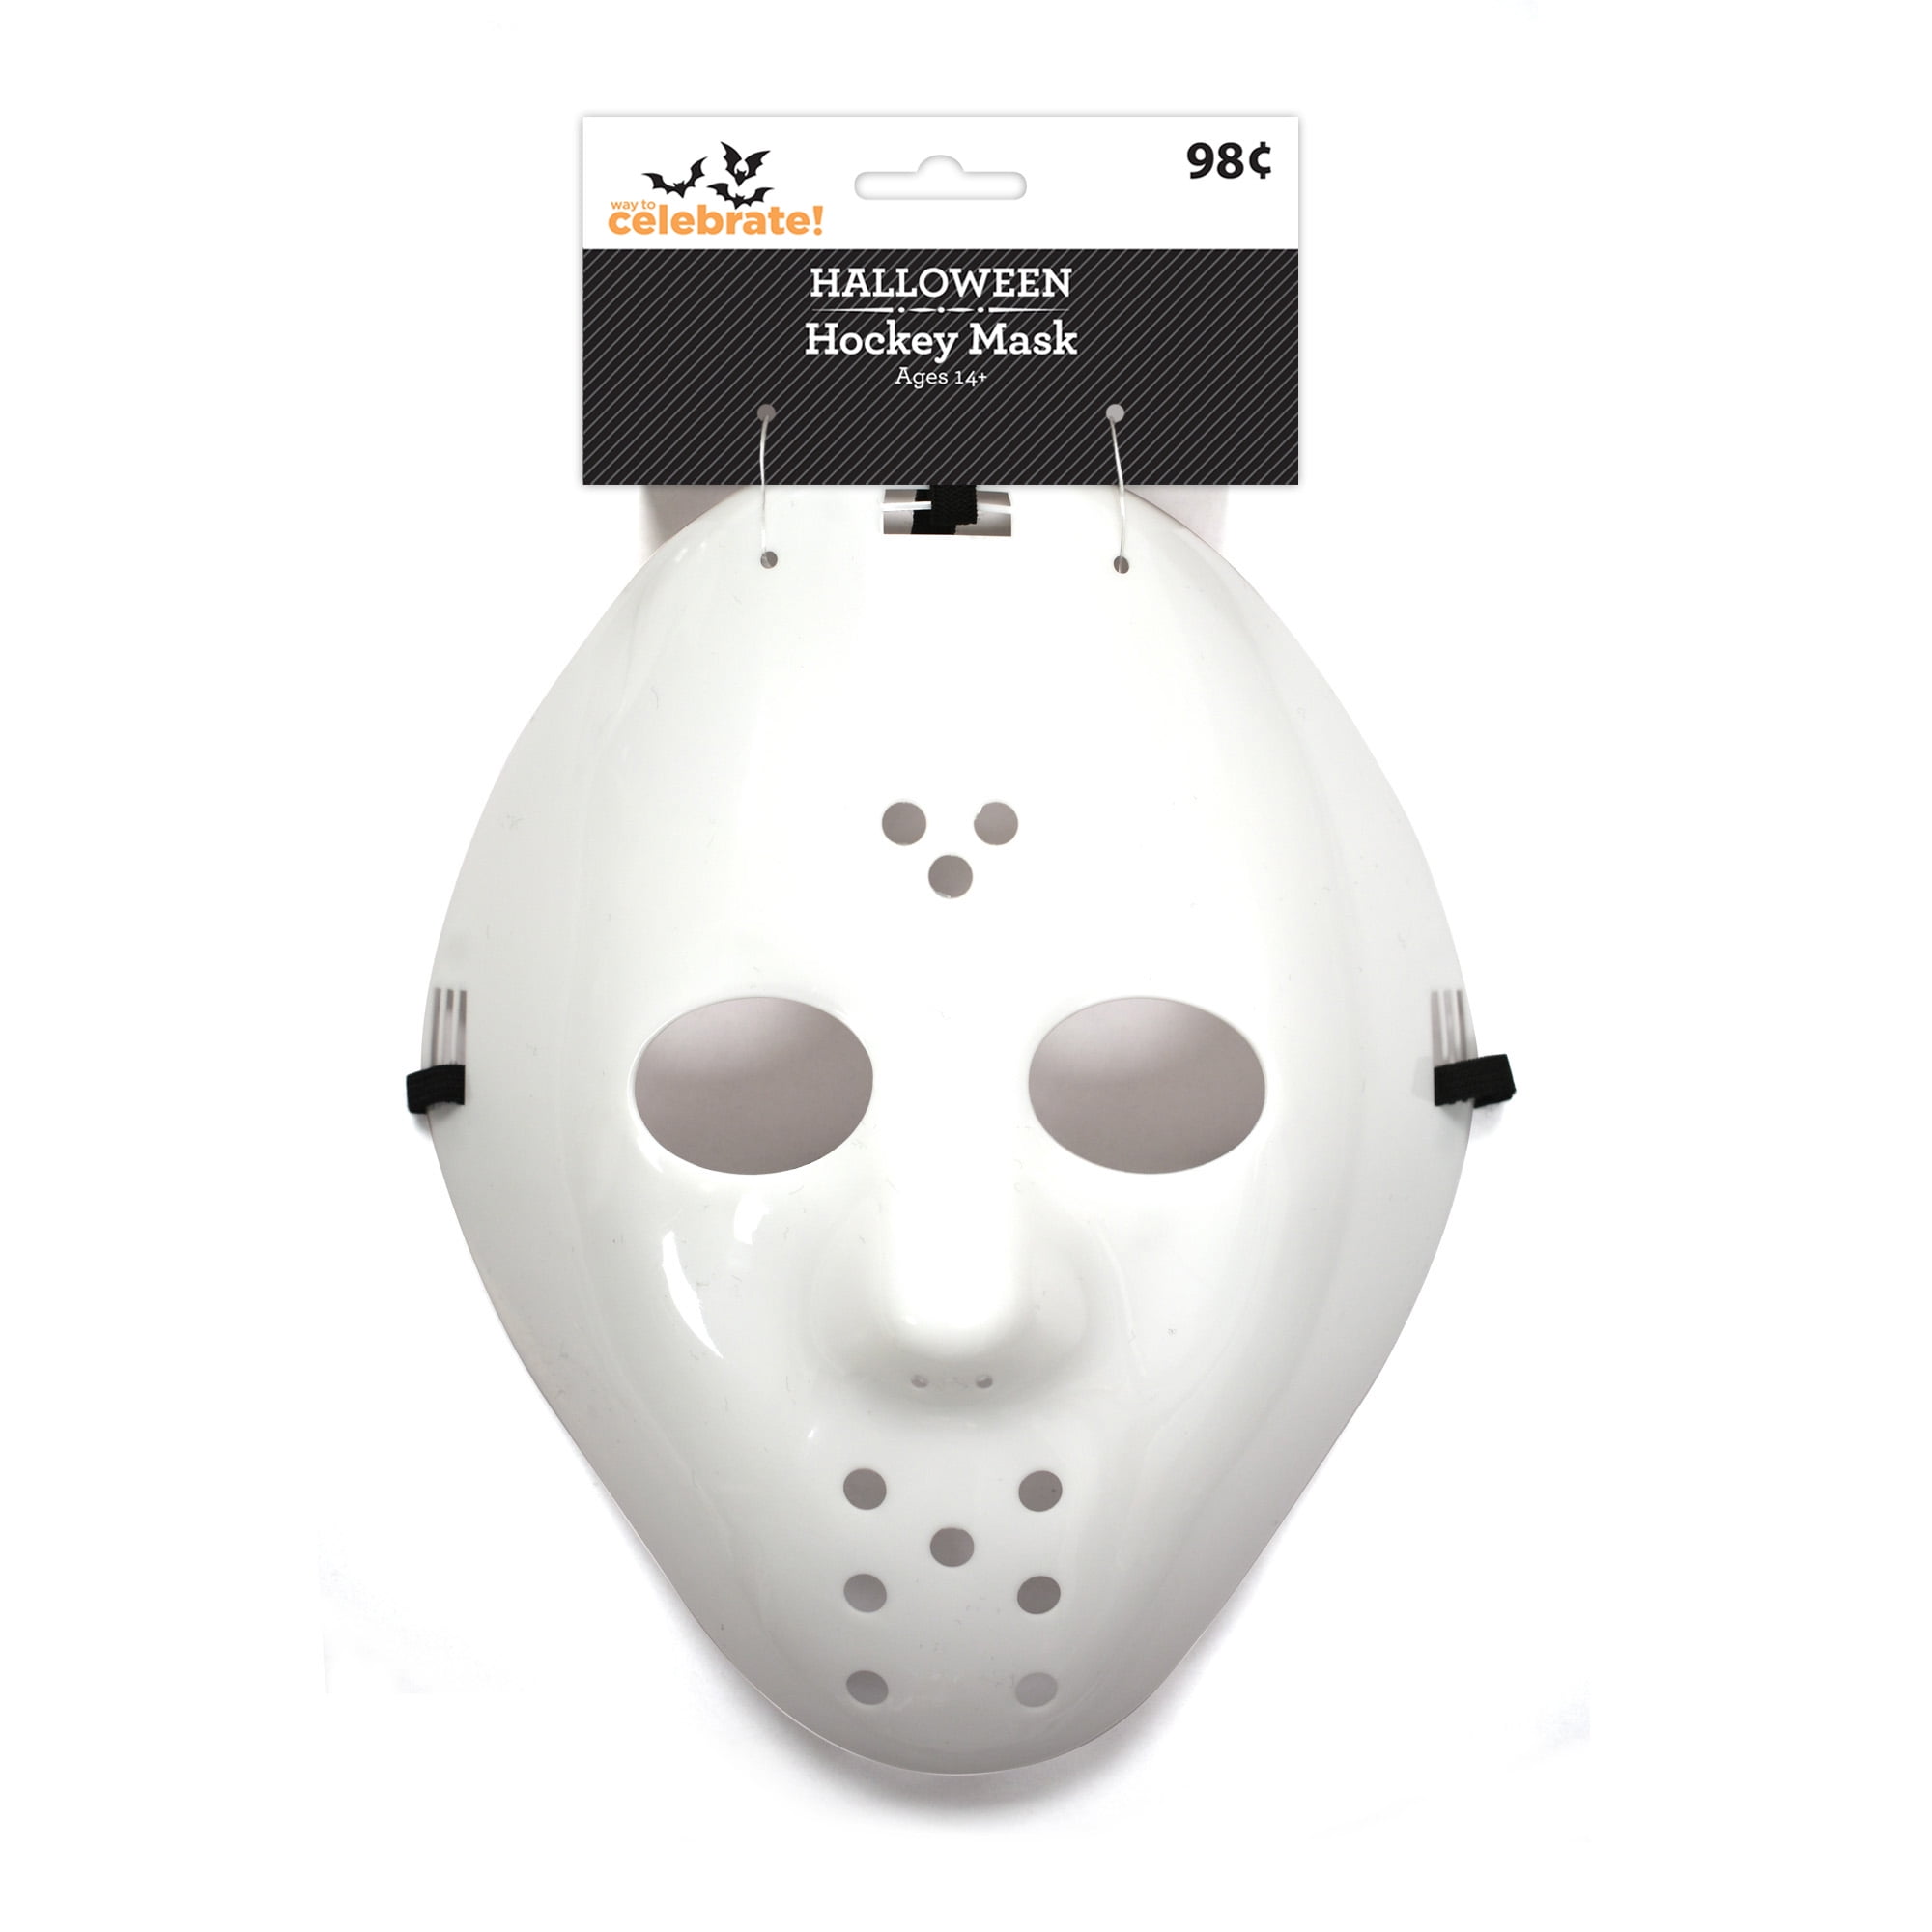 Way To Celebrate Halloween Unisex Adult White Hockey Mask